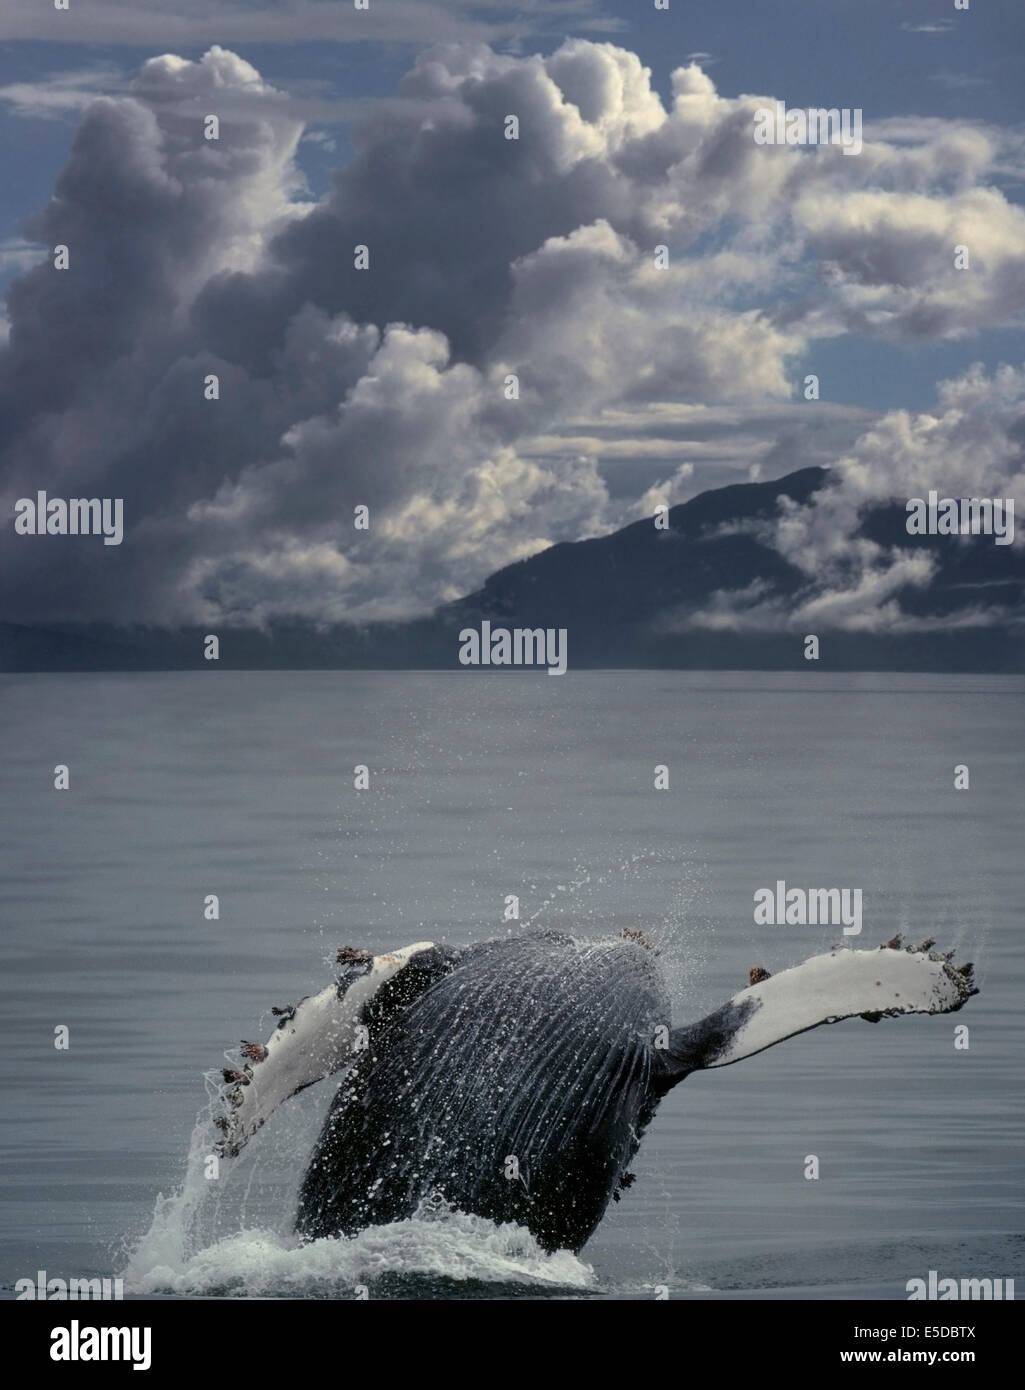 Baleine à bosse (Megaptera novaeangliae) violer dans Frederick Sound, au sud-est de l'Alaska. L'archipel Alexander Tongass, Natio Banque D'Images